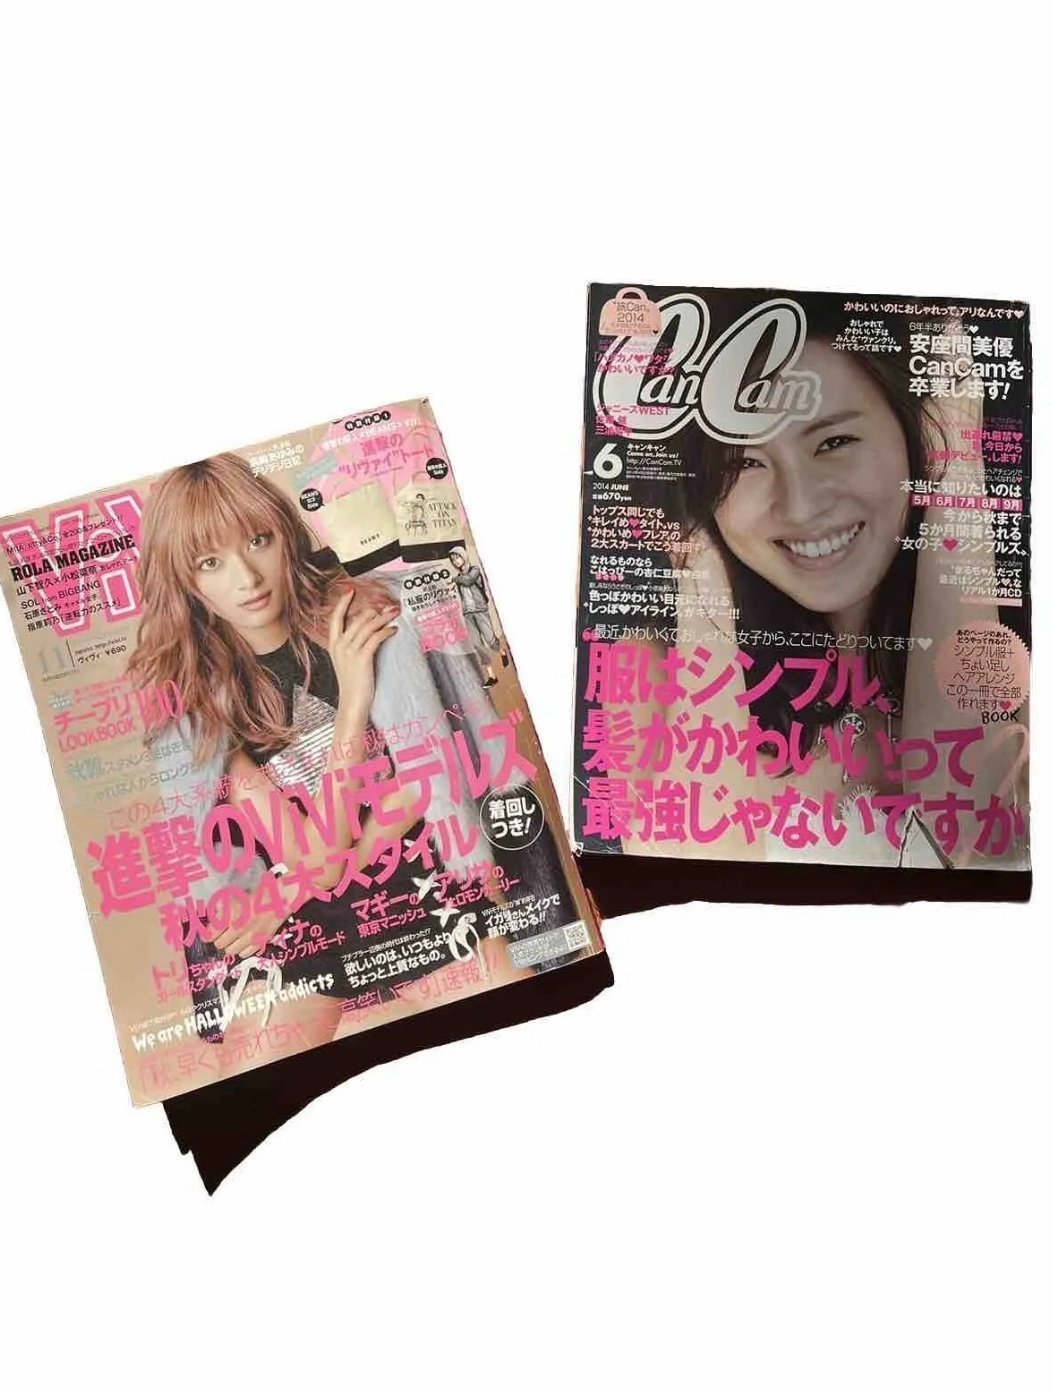 Japanese fashion magazines 2010s style bigbang 1xPFzcxz